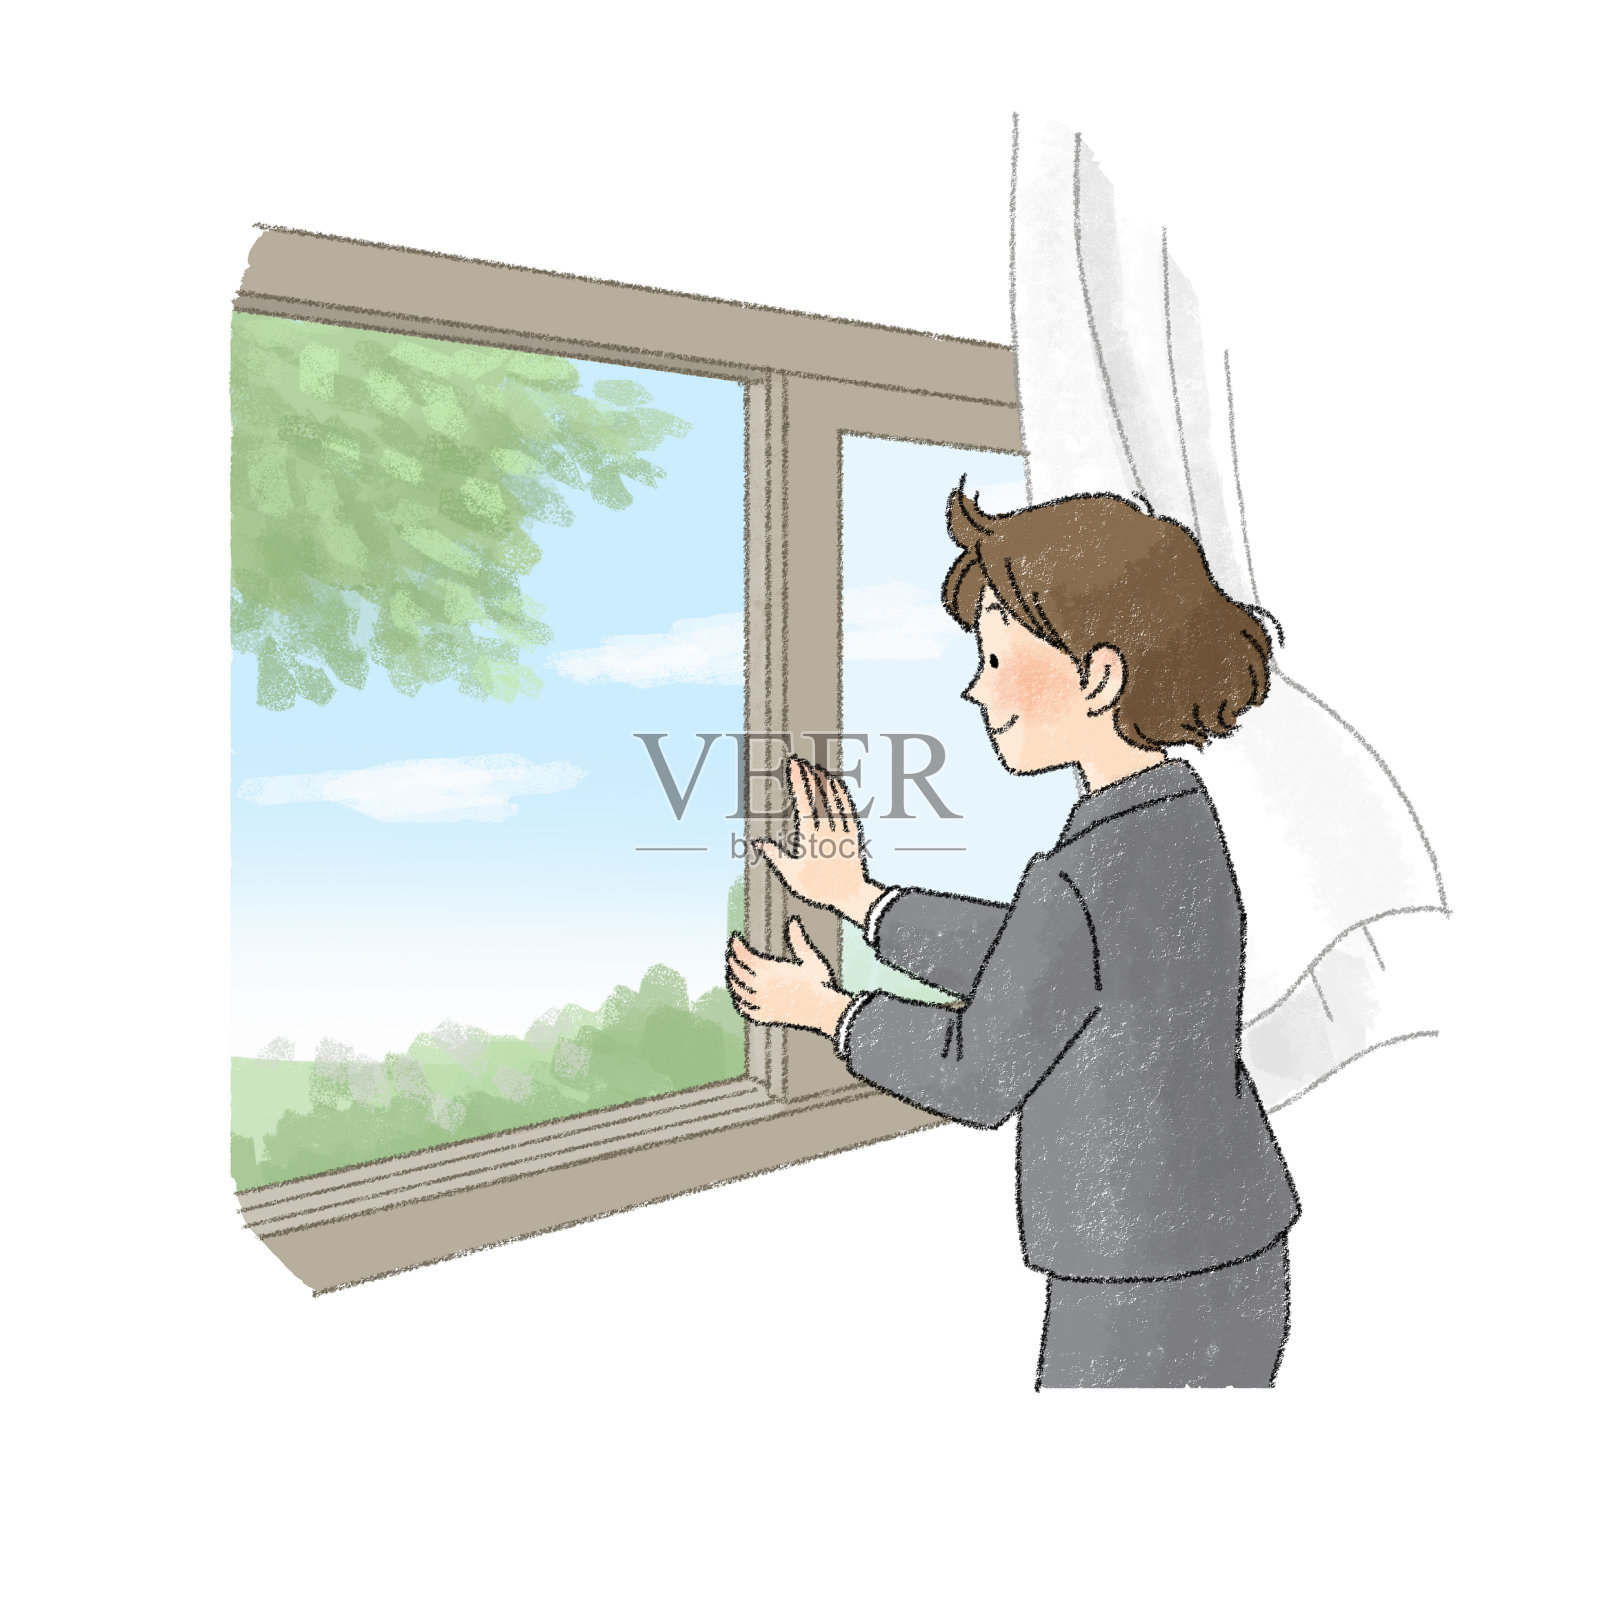 一个人打开窗户和通风的插图(女性办公室职员)插画图片素材